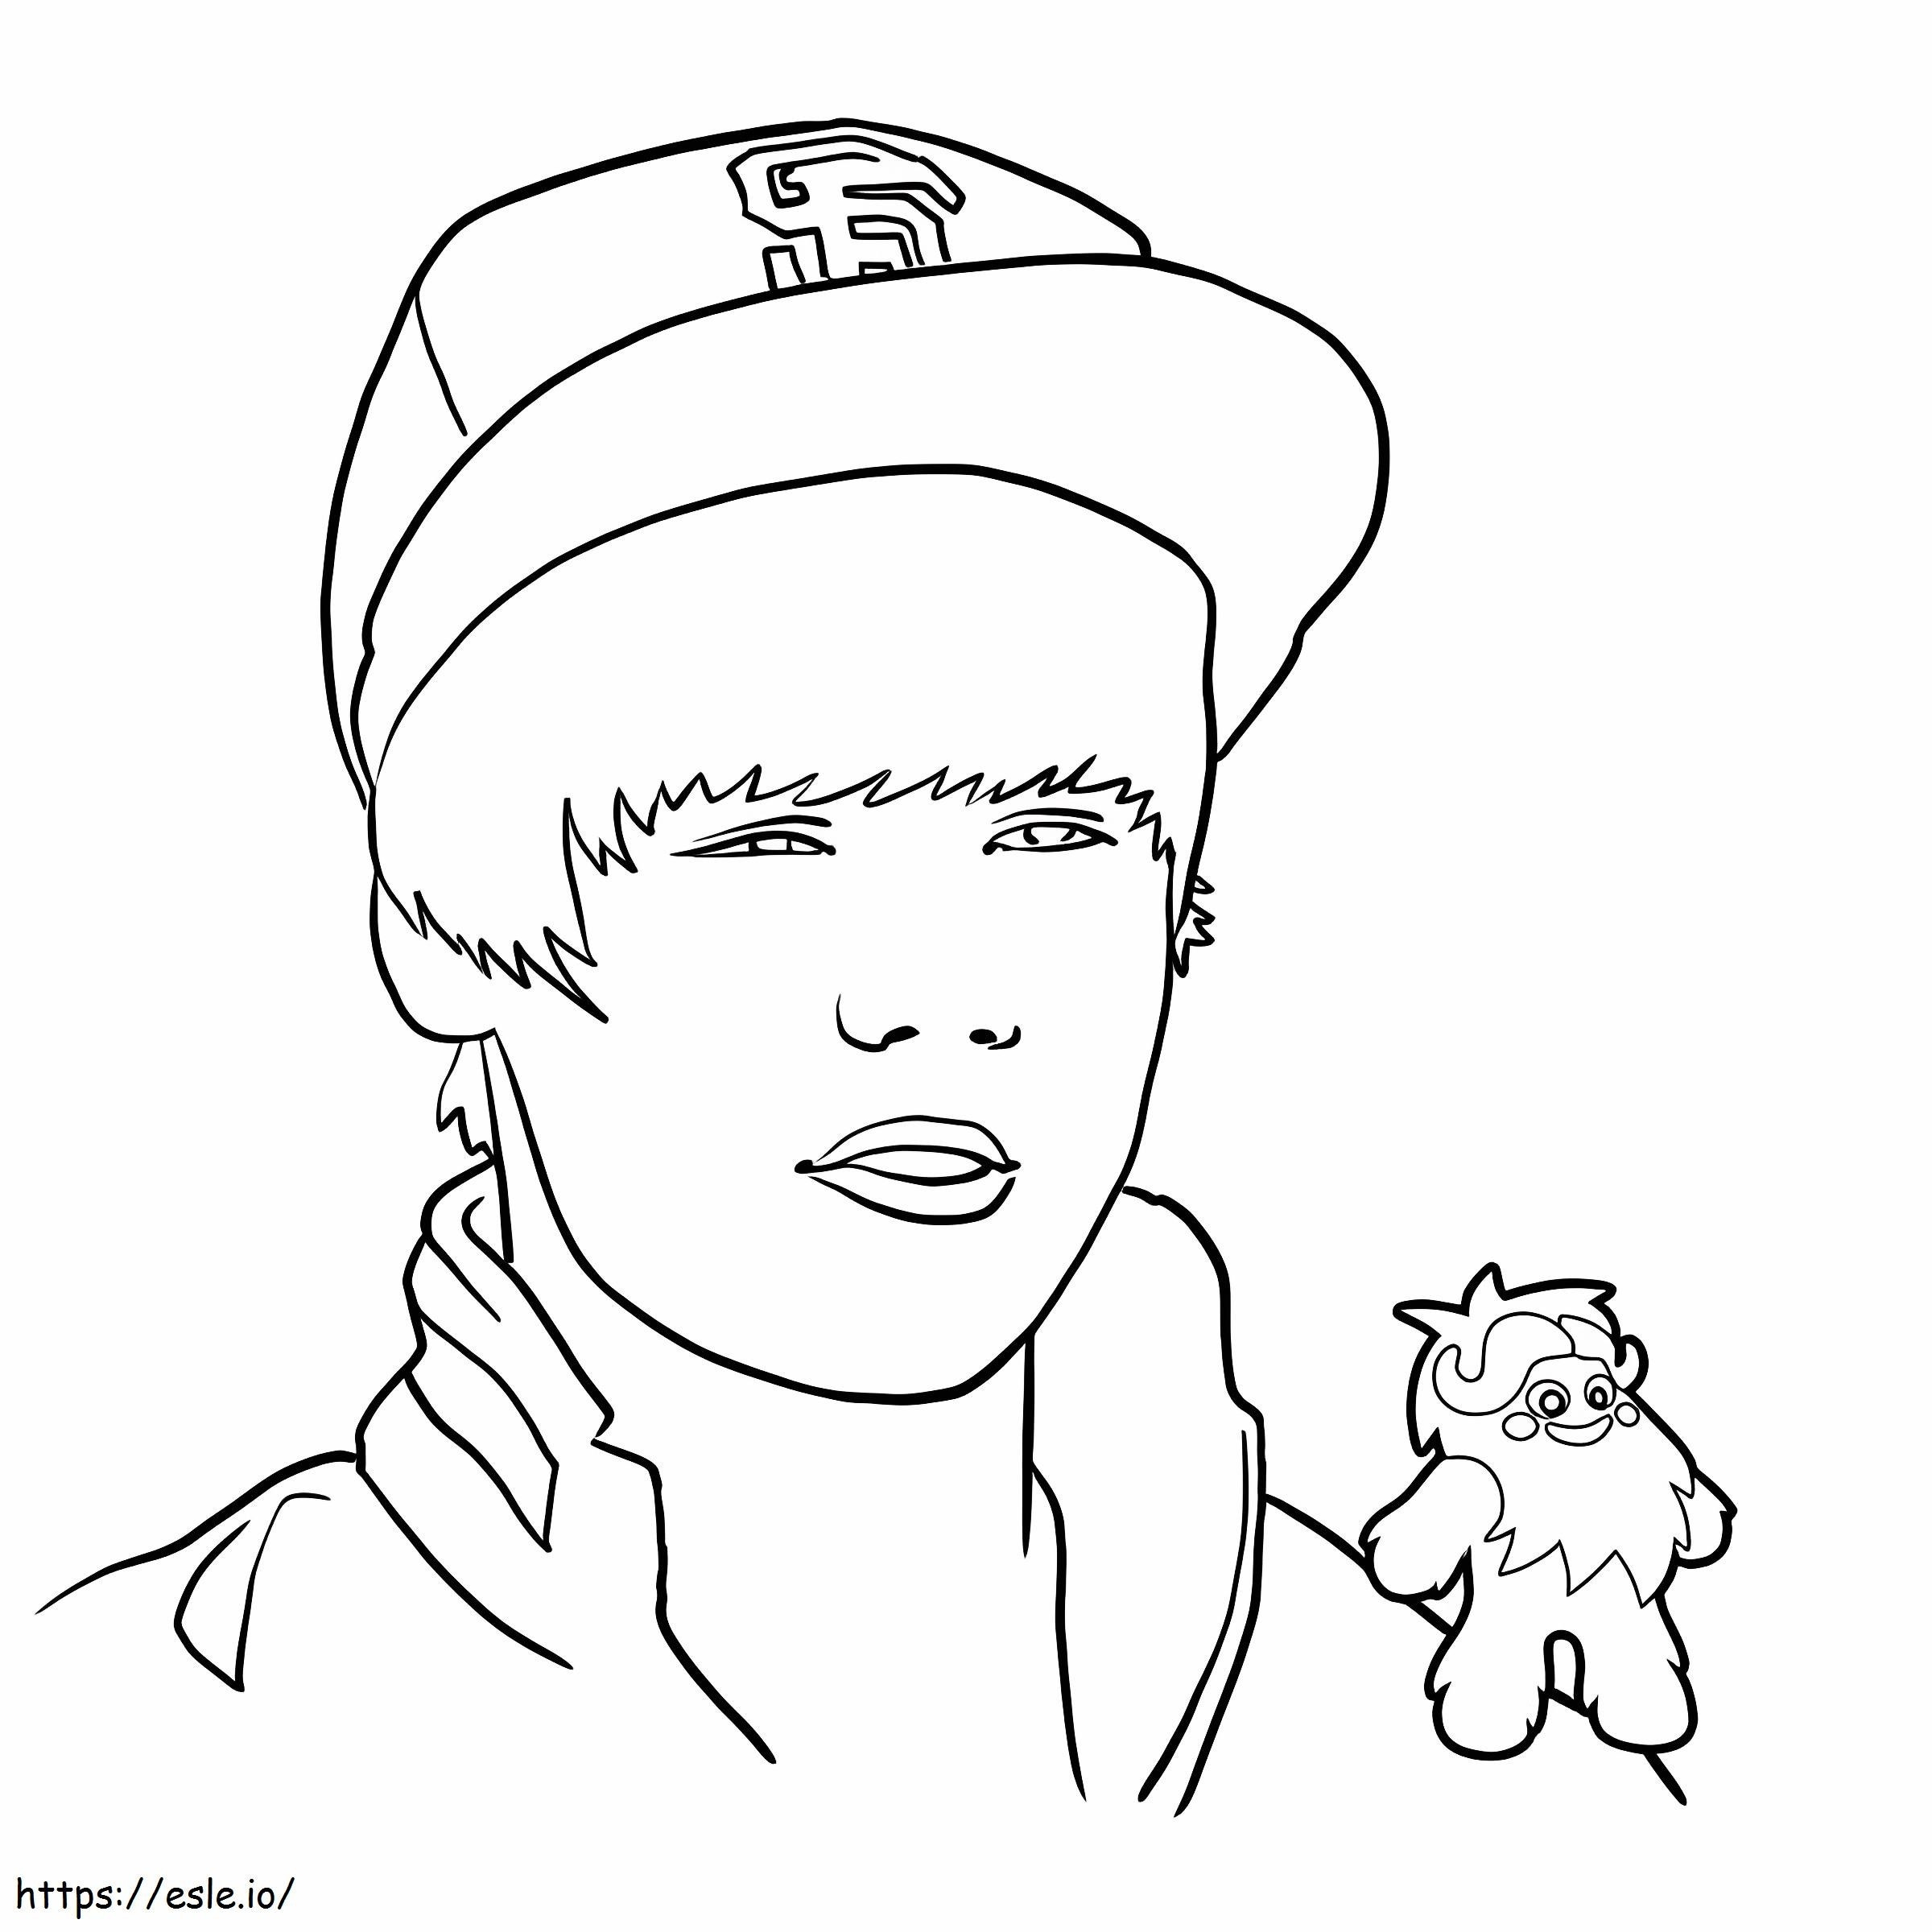 Treten Sie Justin Bieber mit Mascota gegenüber ausmalbilder